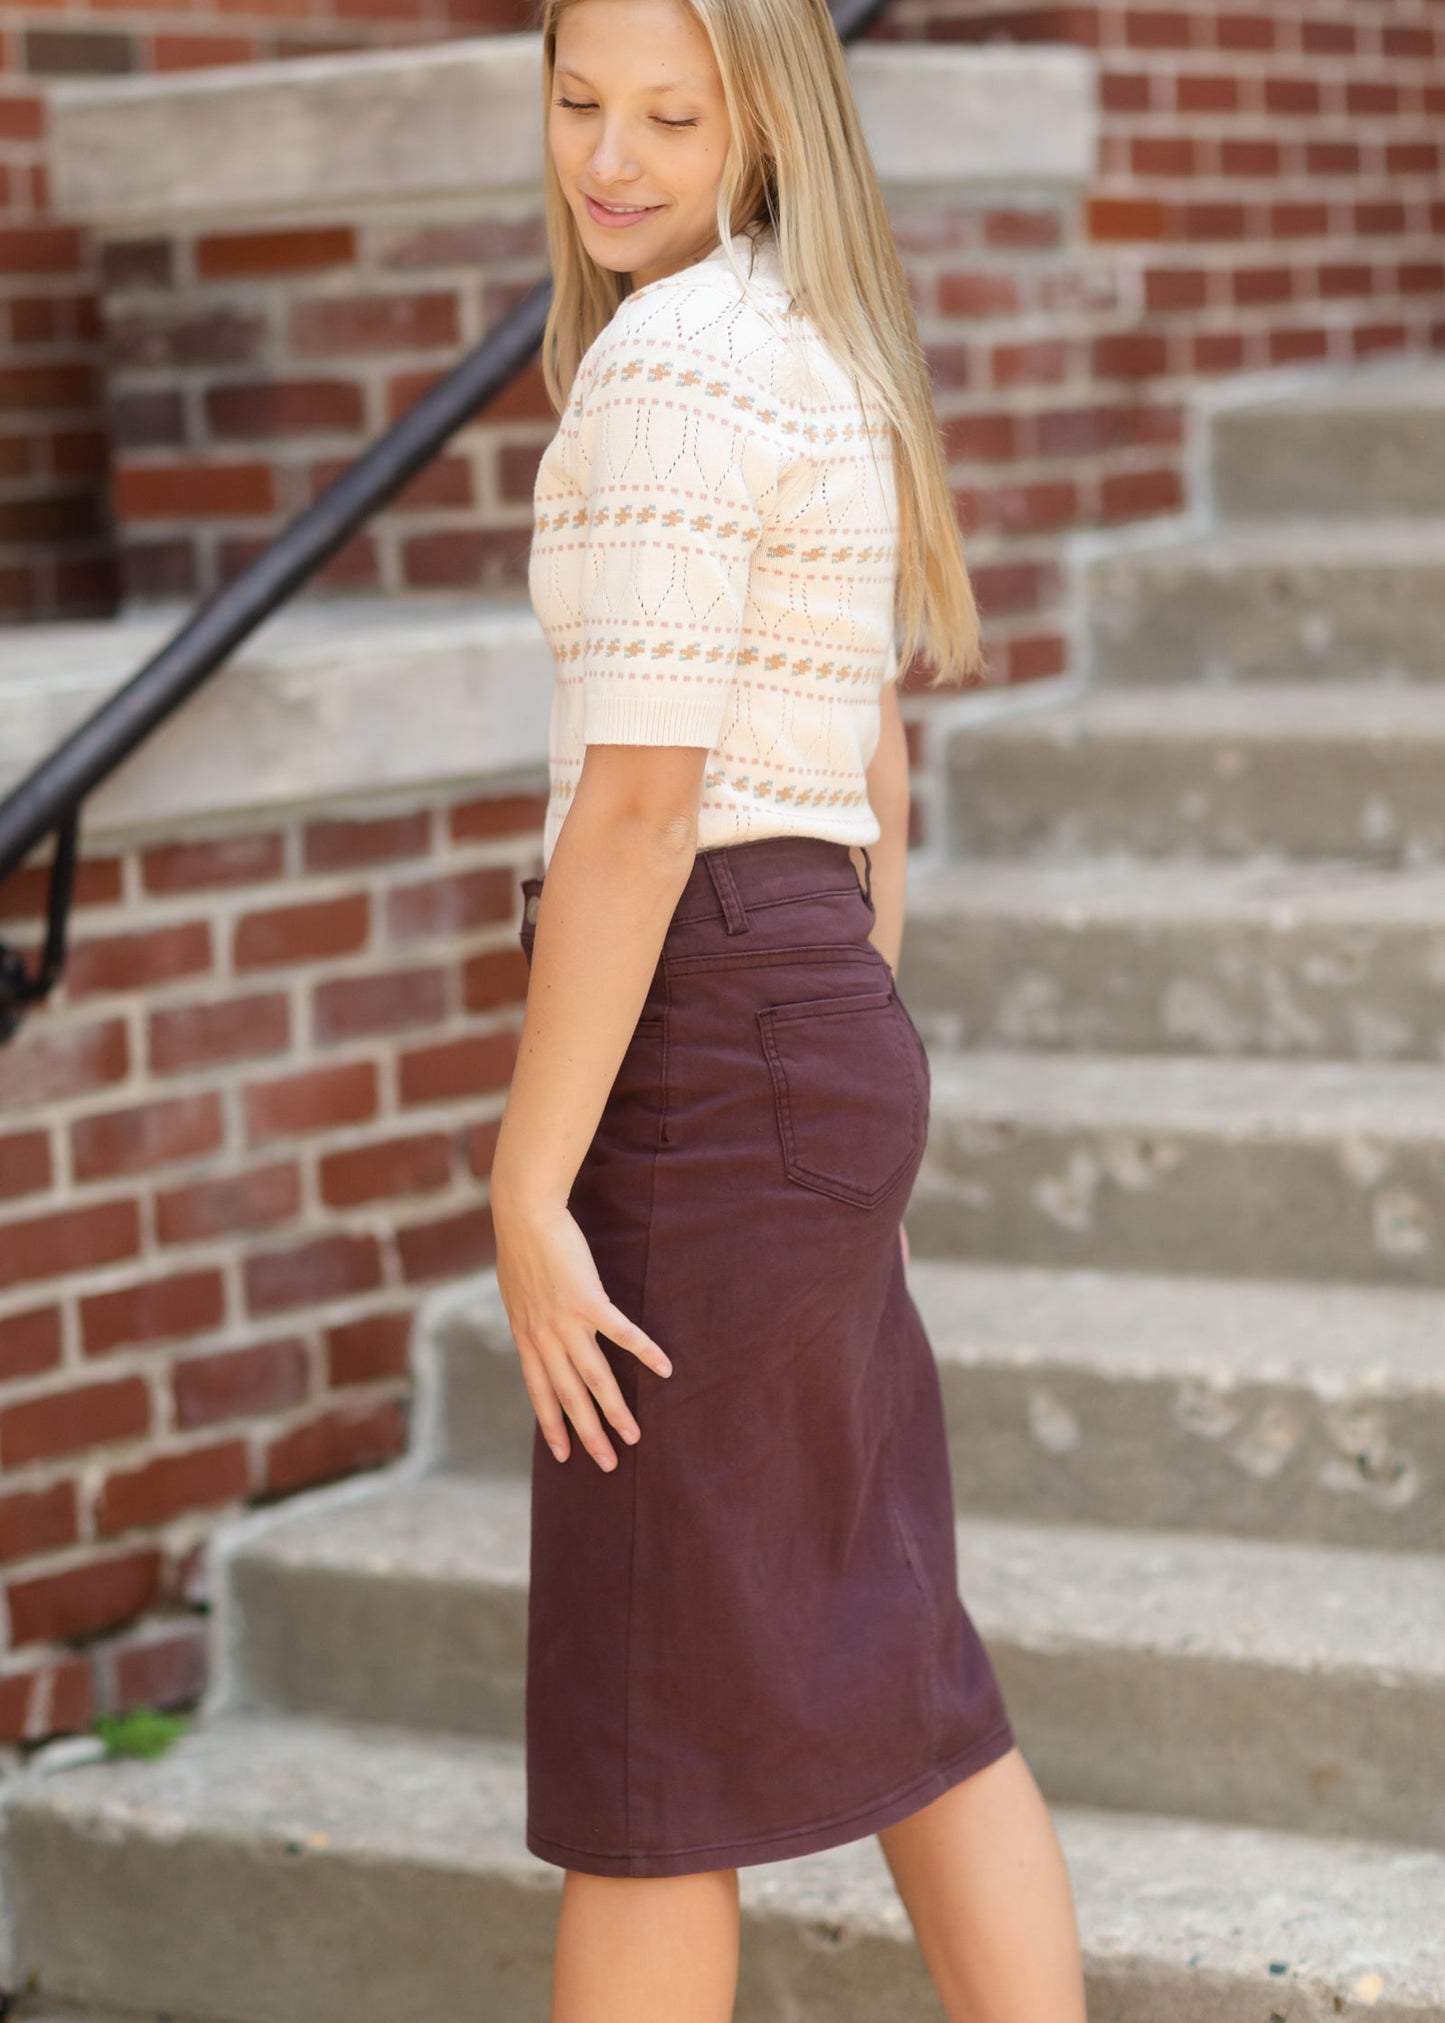 Remi Currant Denim Midi Skirt - FINAL SALE IC Skirts